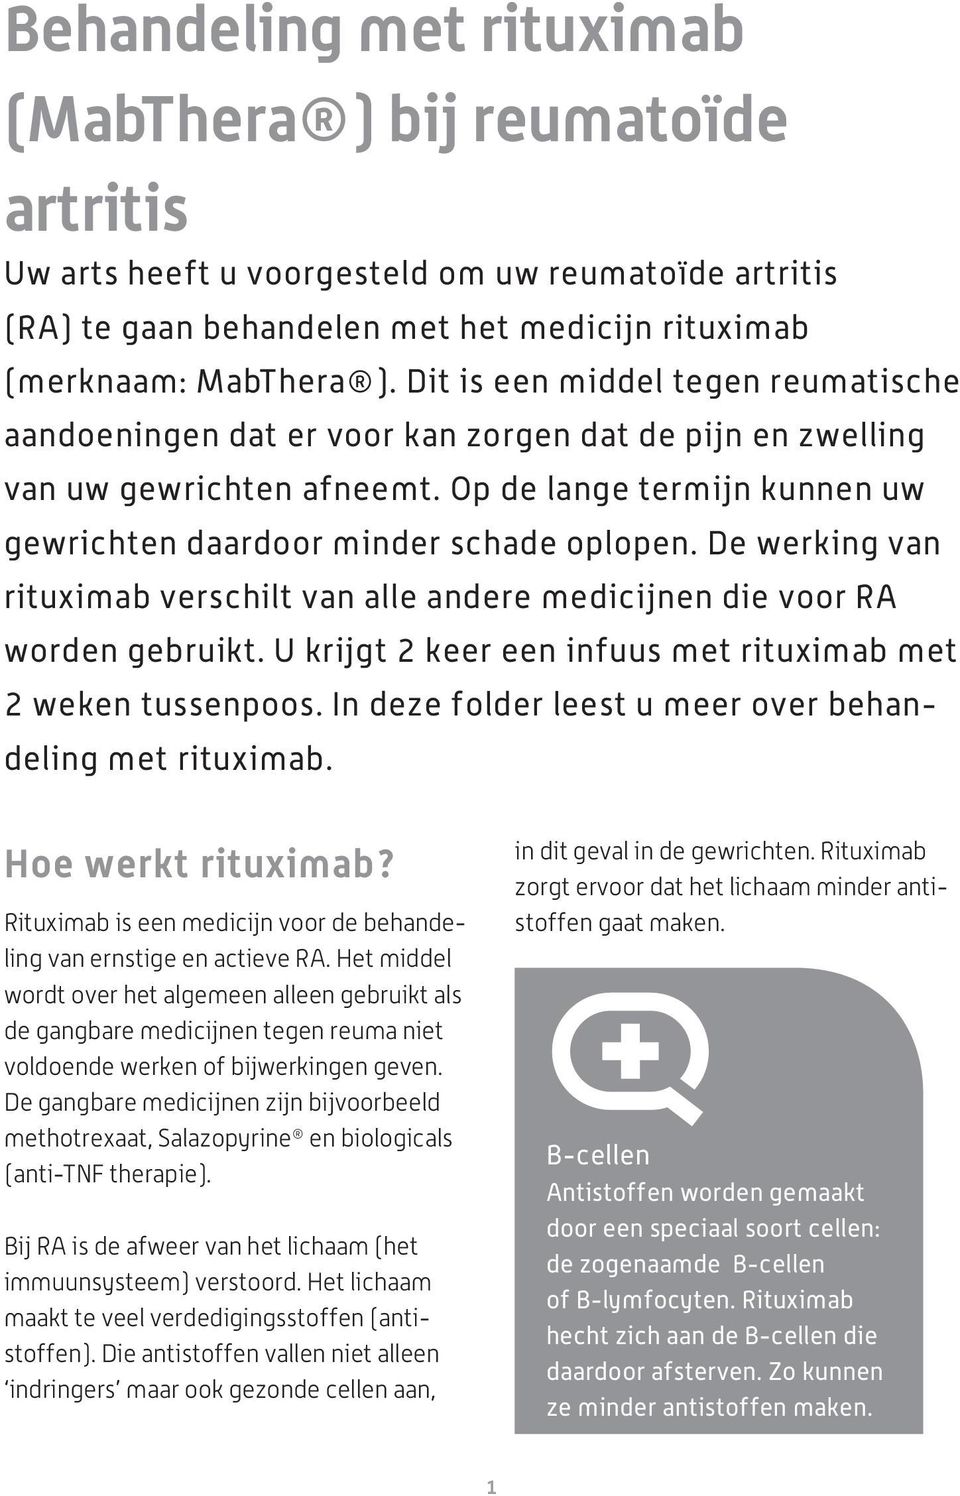 De werking van rituximab verschilt van alle andere medicijnen die voor RA worden gebruikt. U krijgt 2 keer een infuus met rituximab met 2 weken tussenpoos.